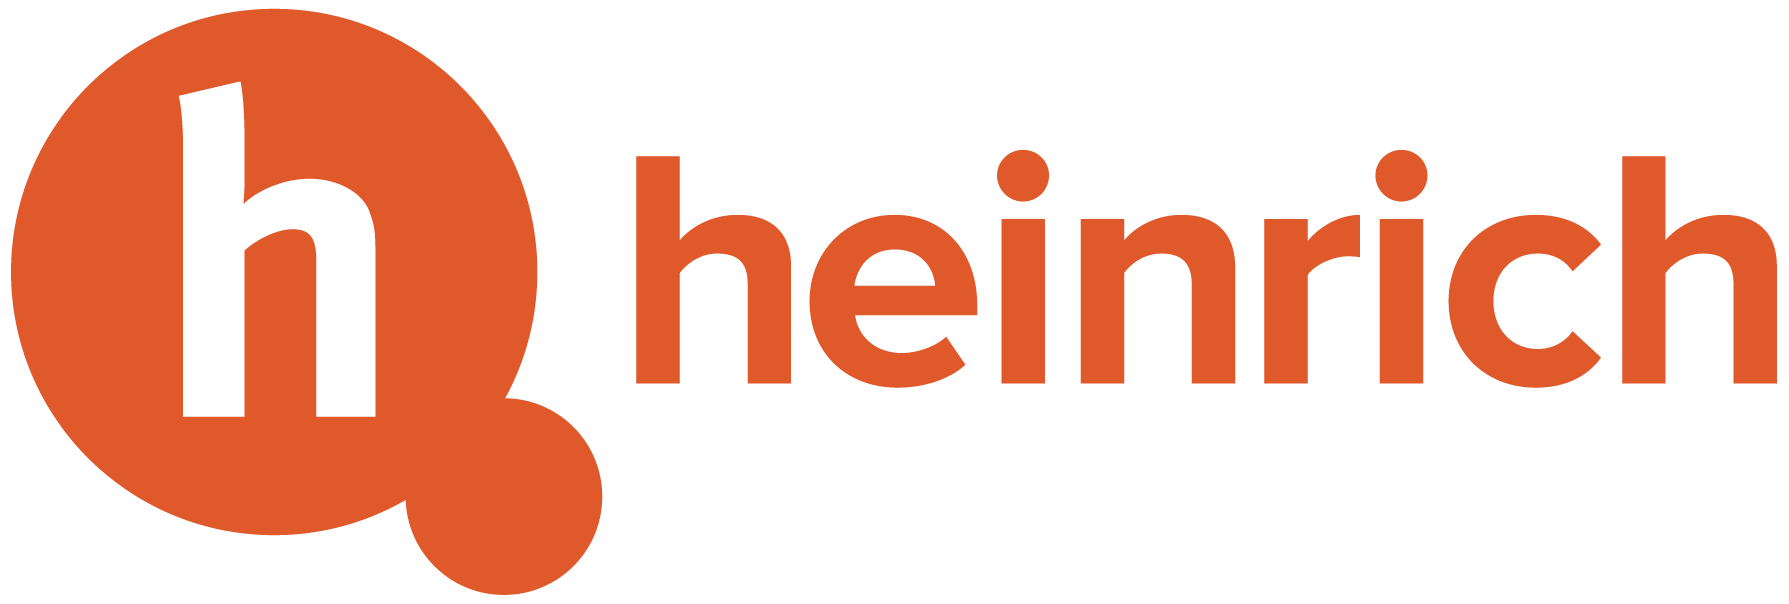 Heinrich Marketing logo